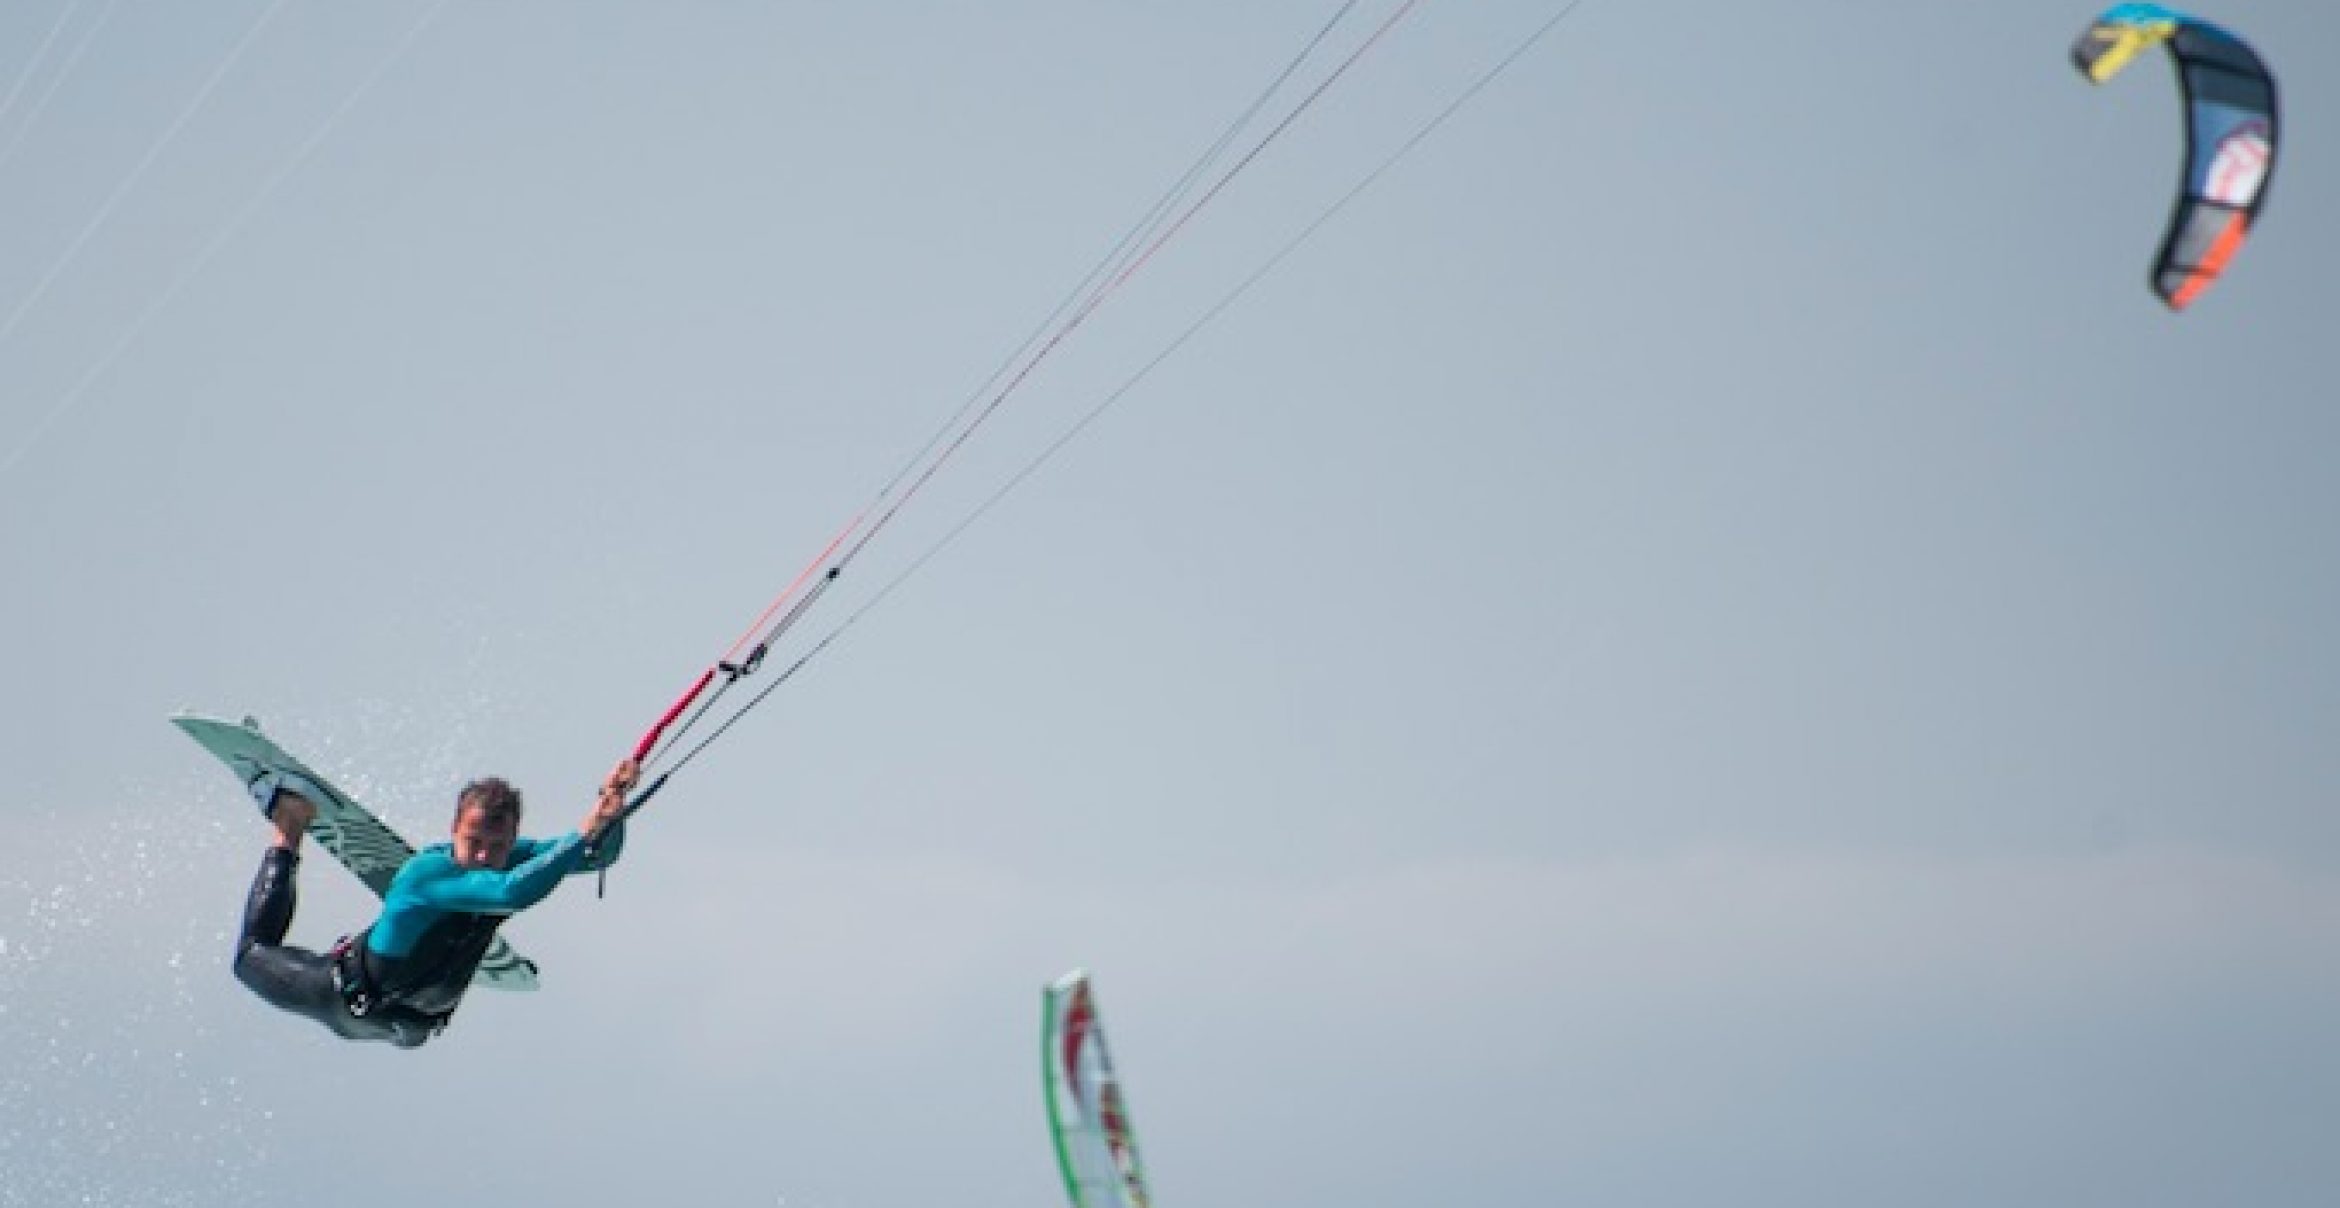 Windige Typen: Beim Founders Kite Club treffen sich Unternehmer und Investoren zum Kitesurfen